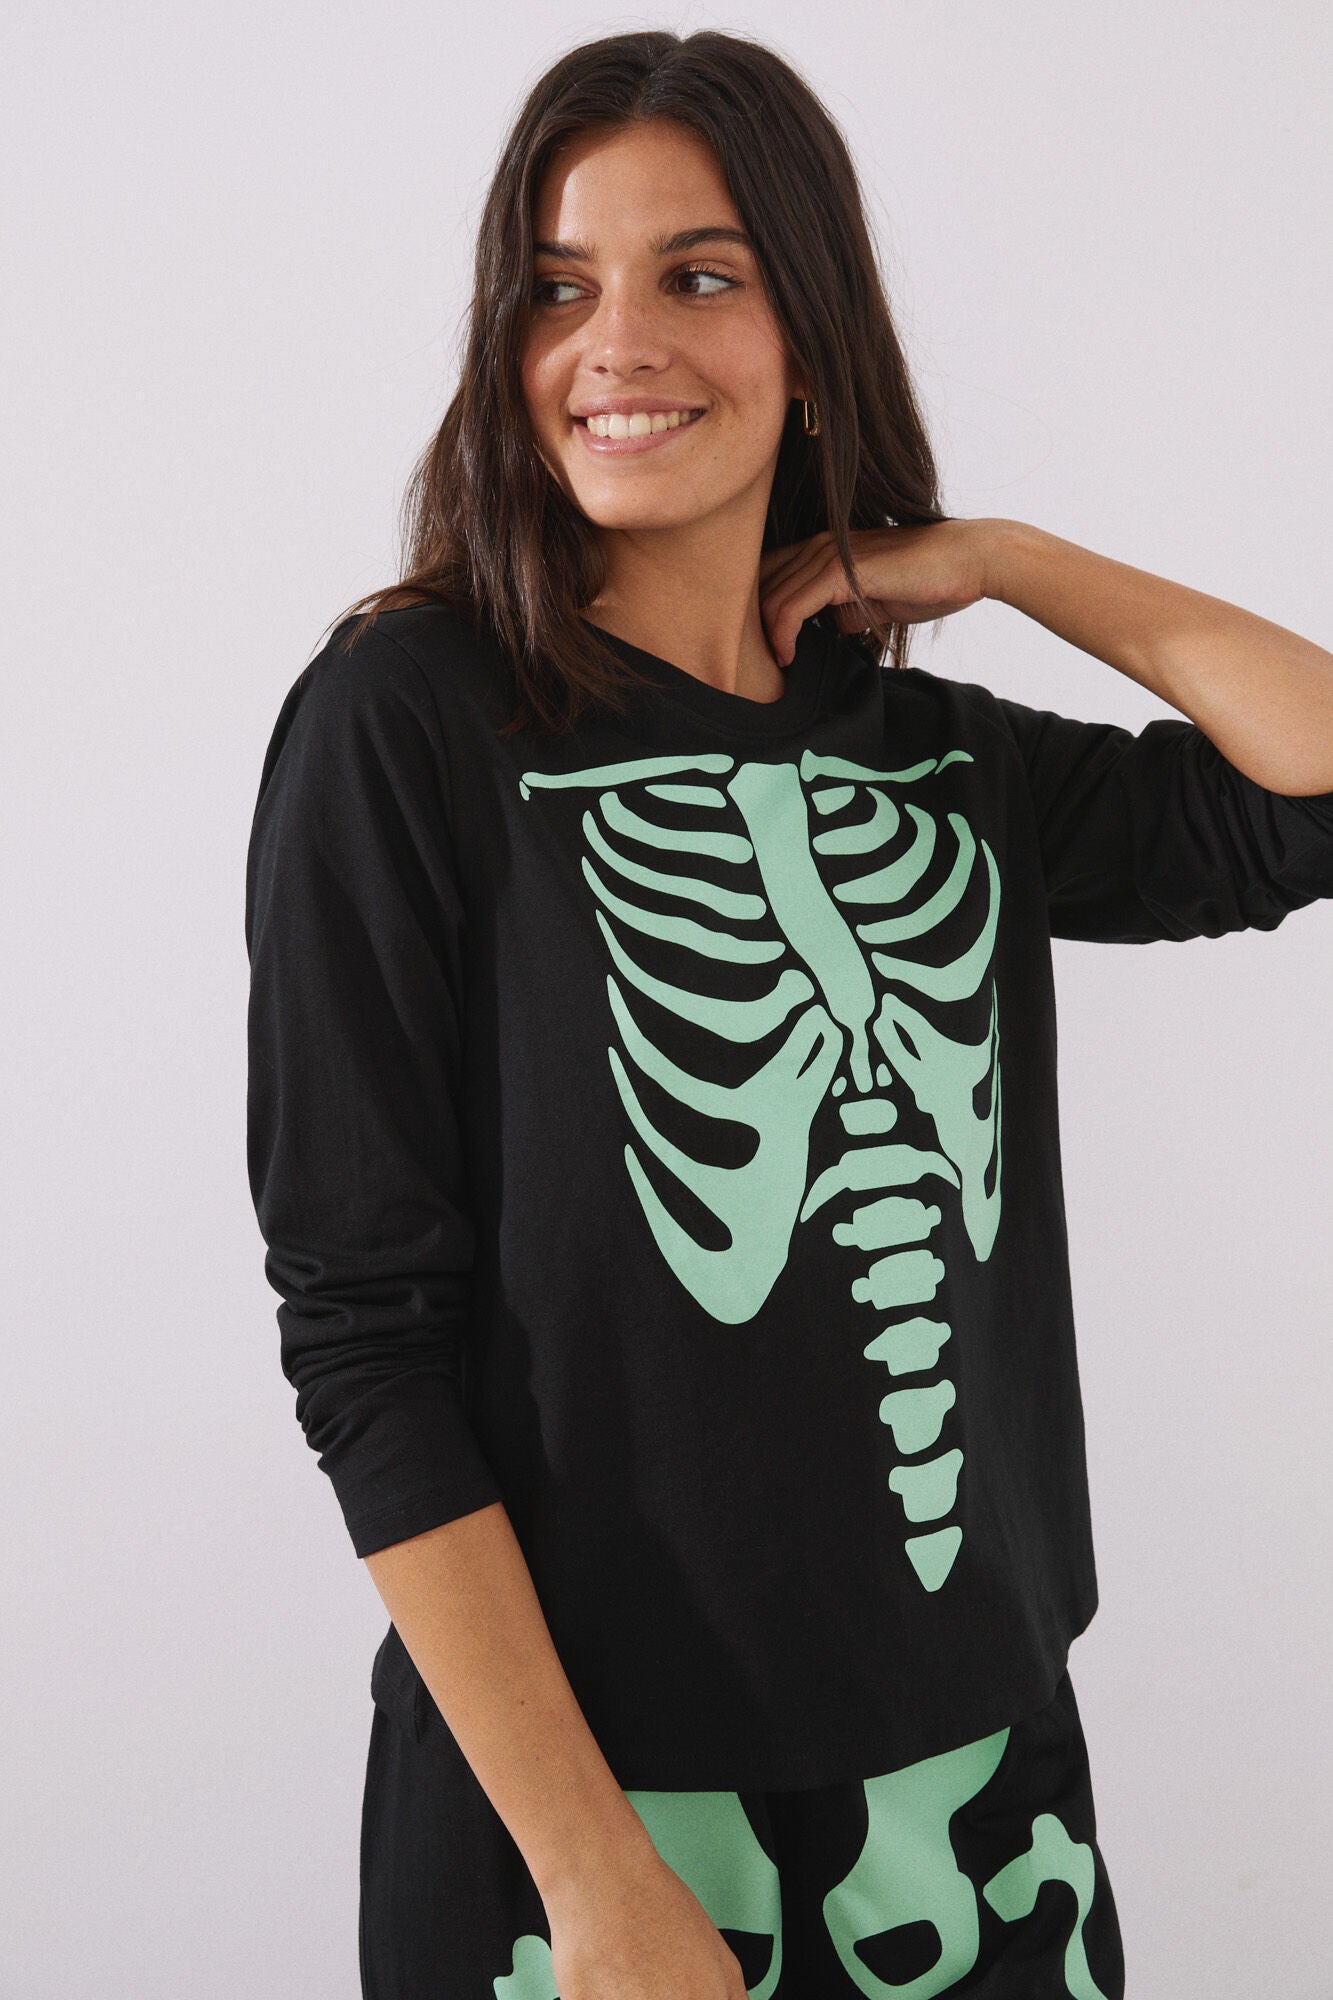 Long pajamas with skeleton